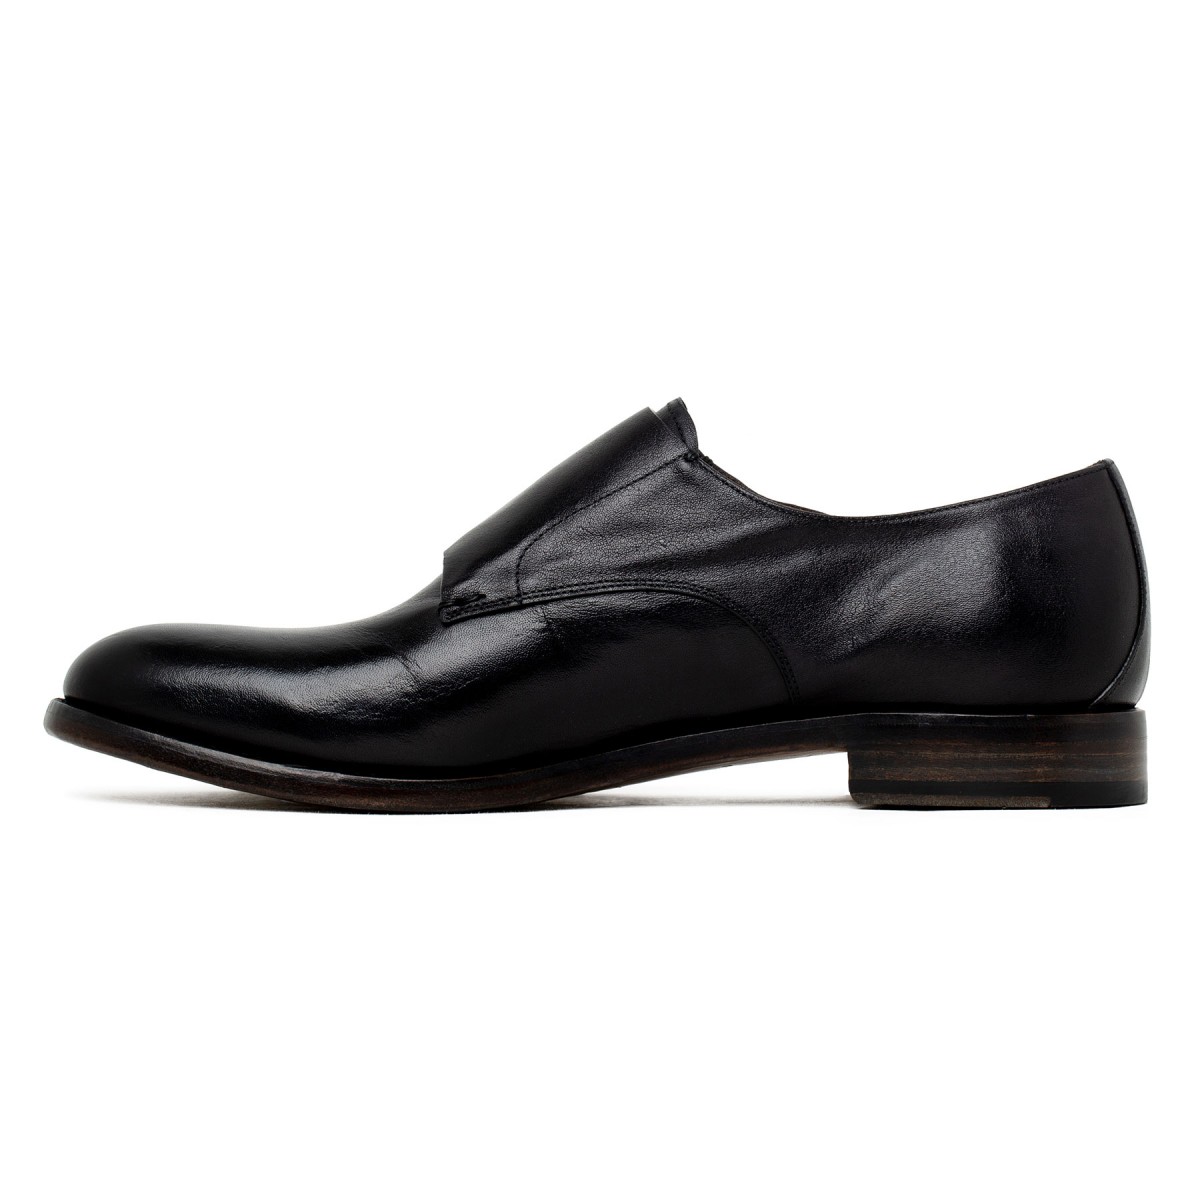 Double monk strap black shoes